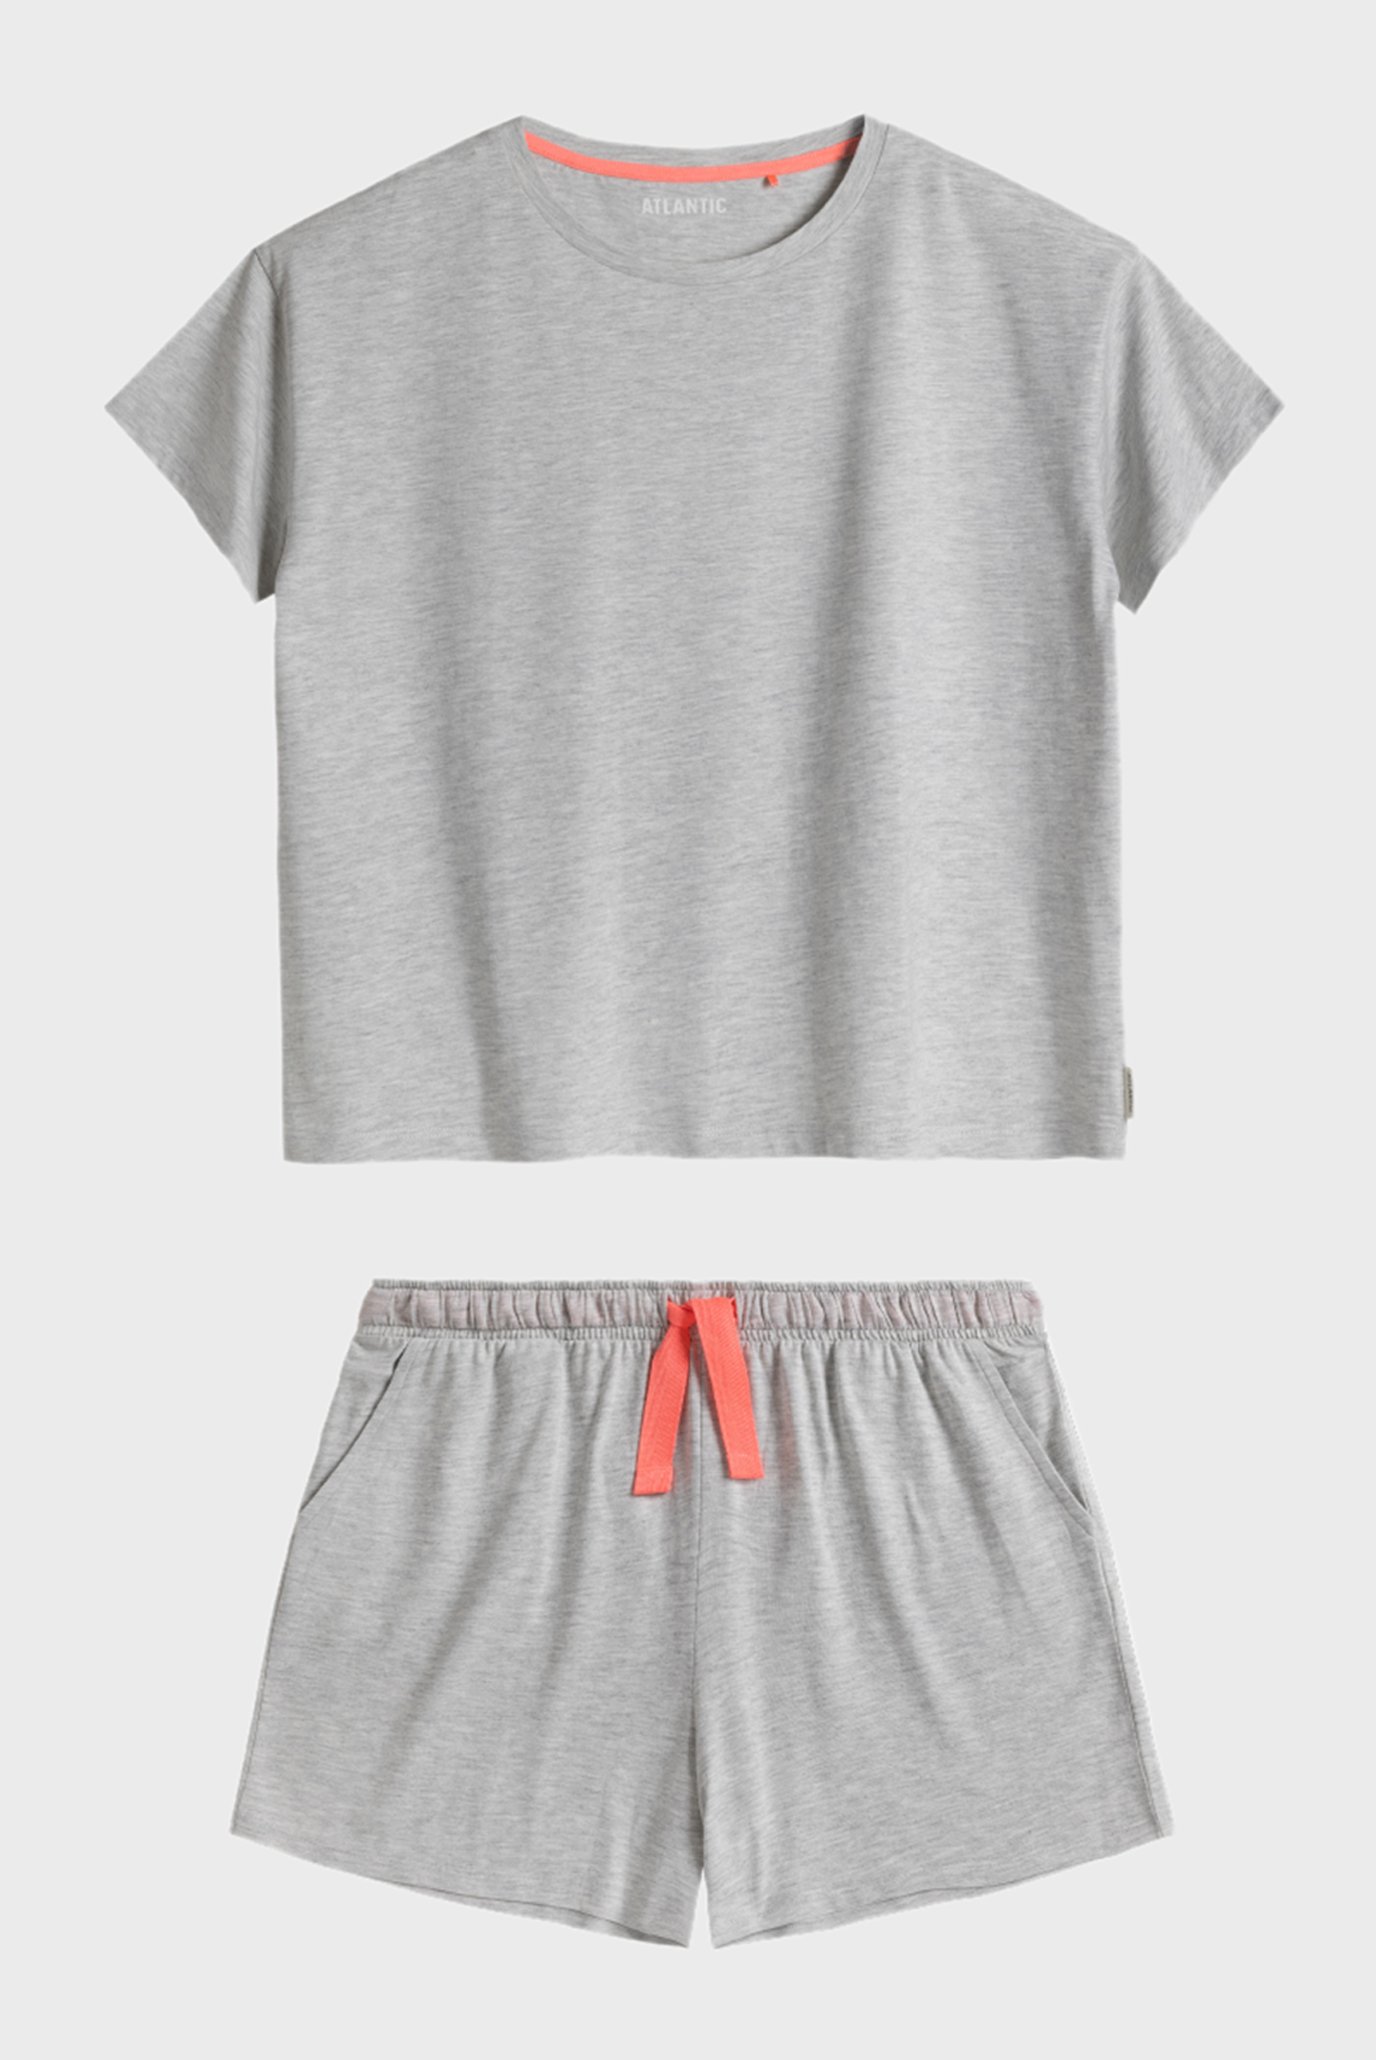 Женская серая пижама (футболка, шорты) 1